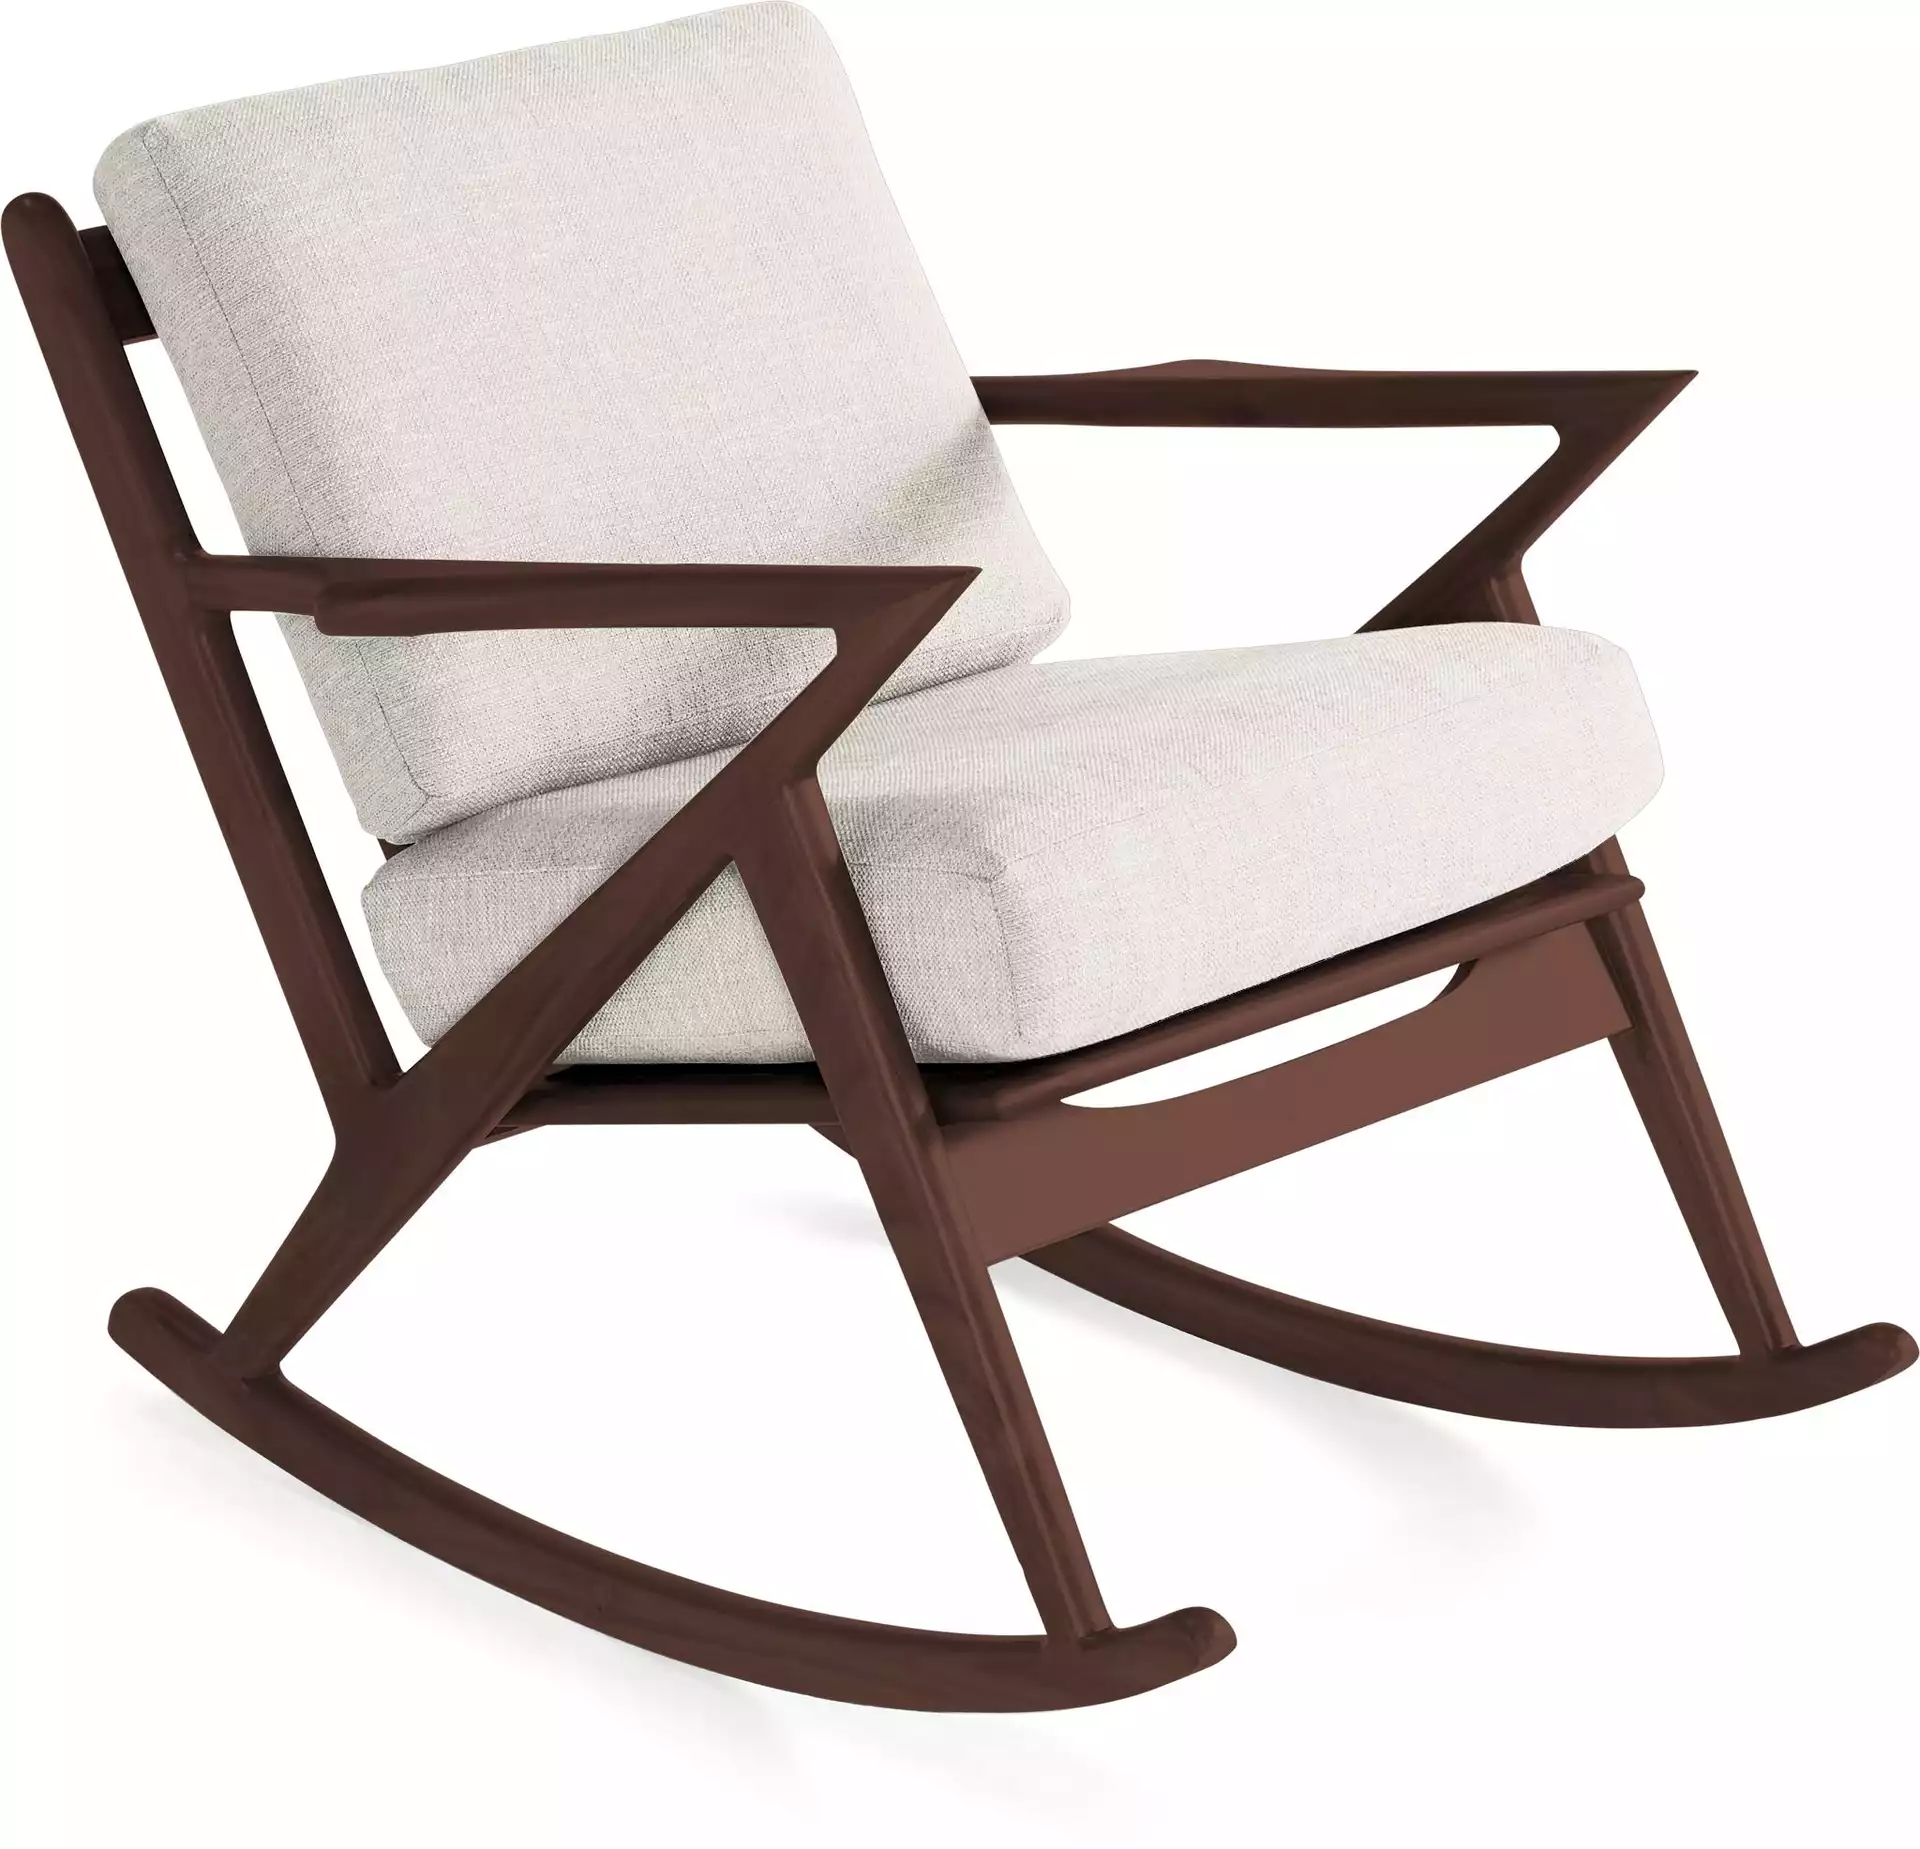 White Soto Mid Century Modern Rocking Chair - Tussah Snow - Walnut